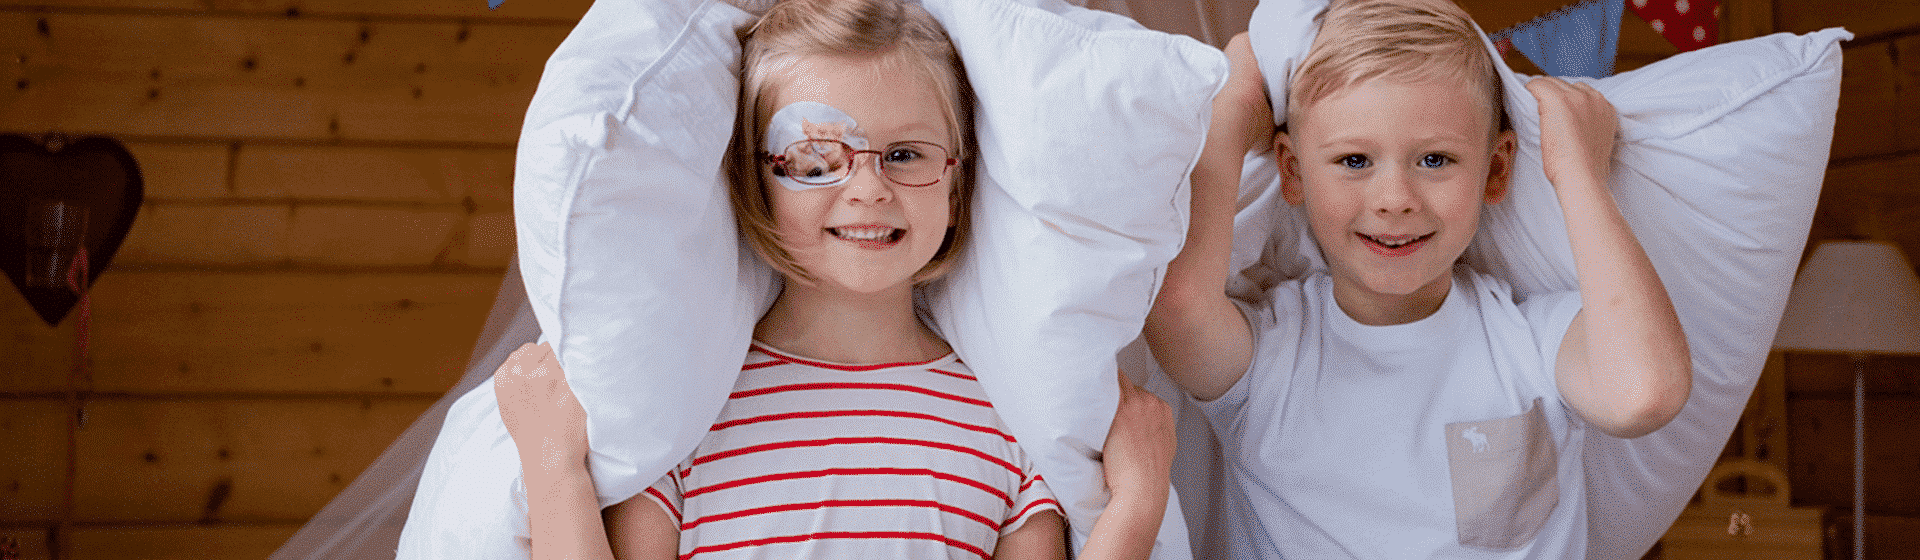 Kinder mit Augenpflaster spielen mit Kissen